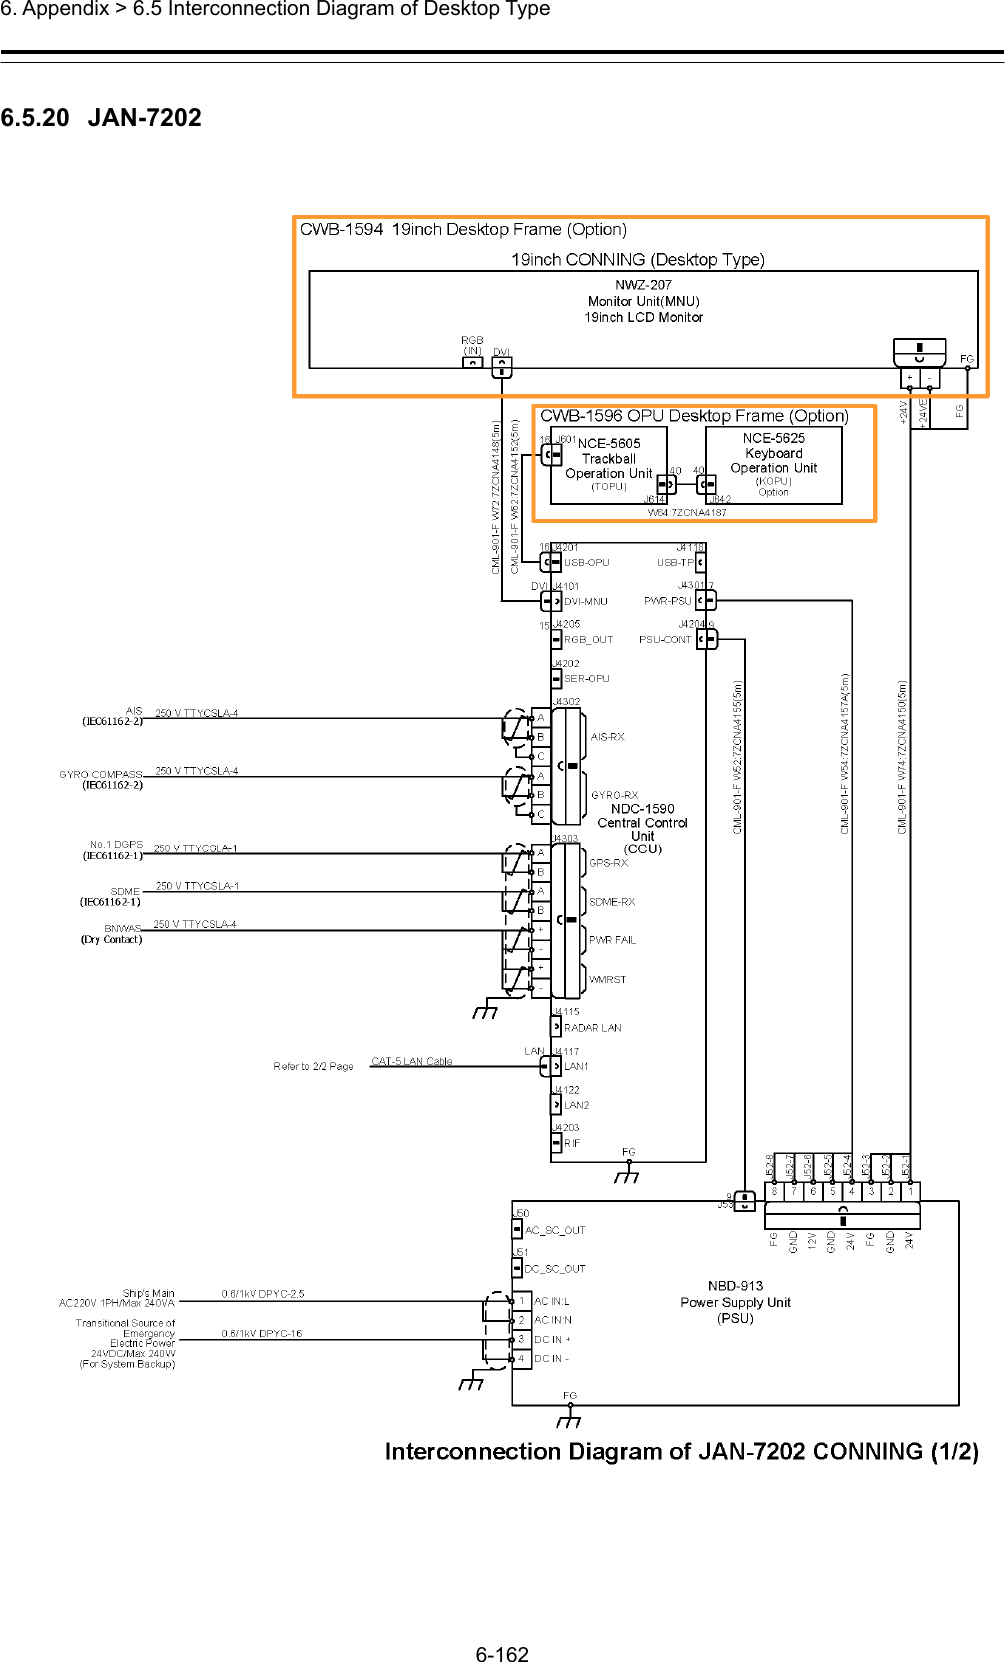  6. Appendix &gt; 6.5 Interconnection Diagram of Desktop Type 6-162  6.5.20  JAN-7202 